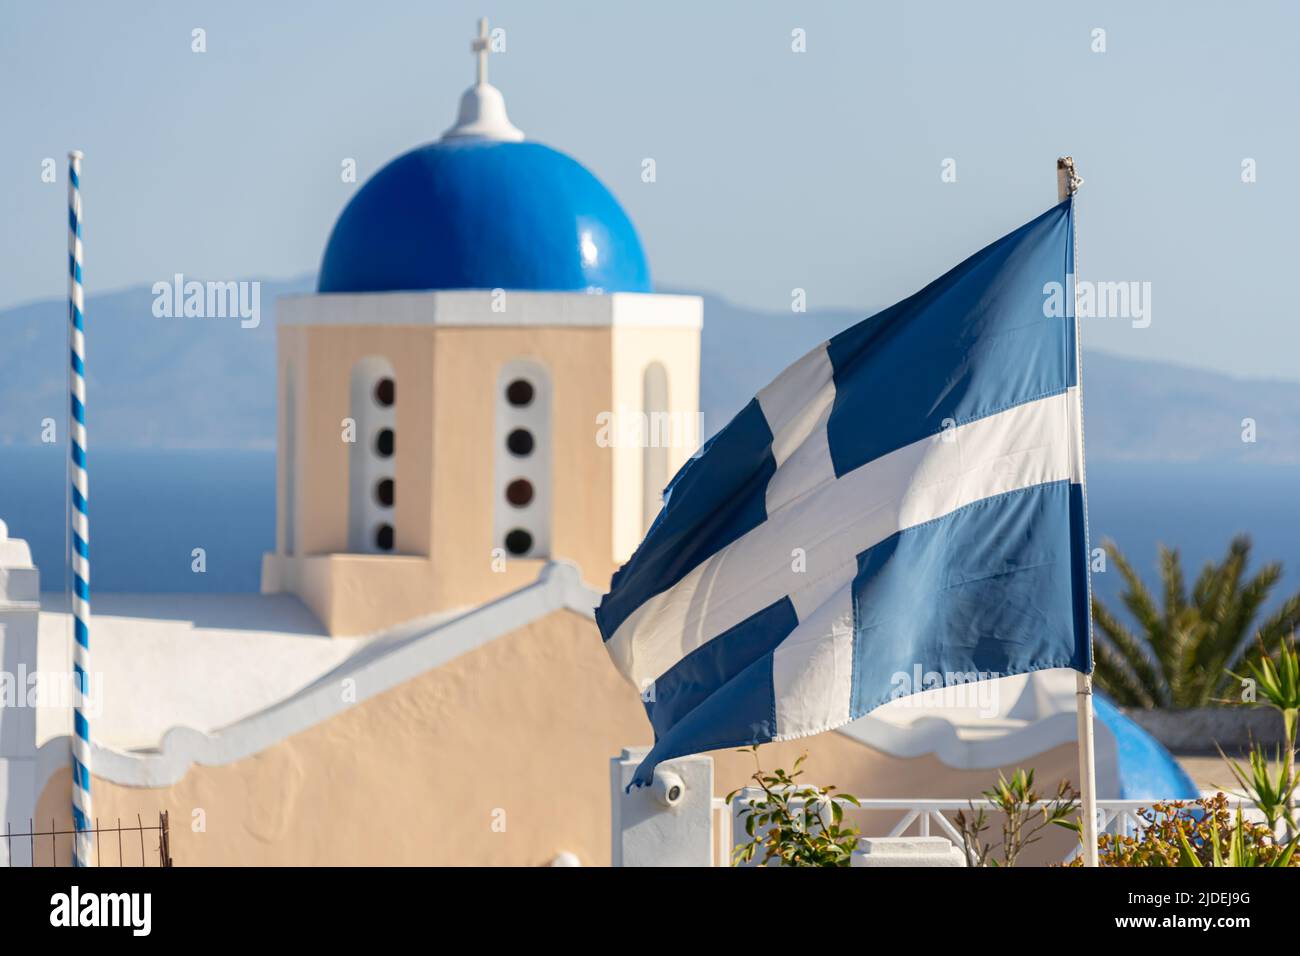 Mittlere Nahaufnahme einer blauen Kuppel mit der alten griechischen Nationalflagge im Vordergrund Stockfoto